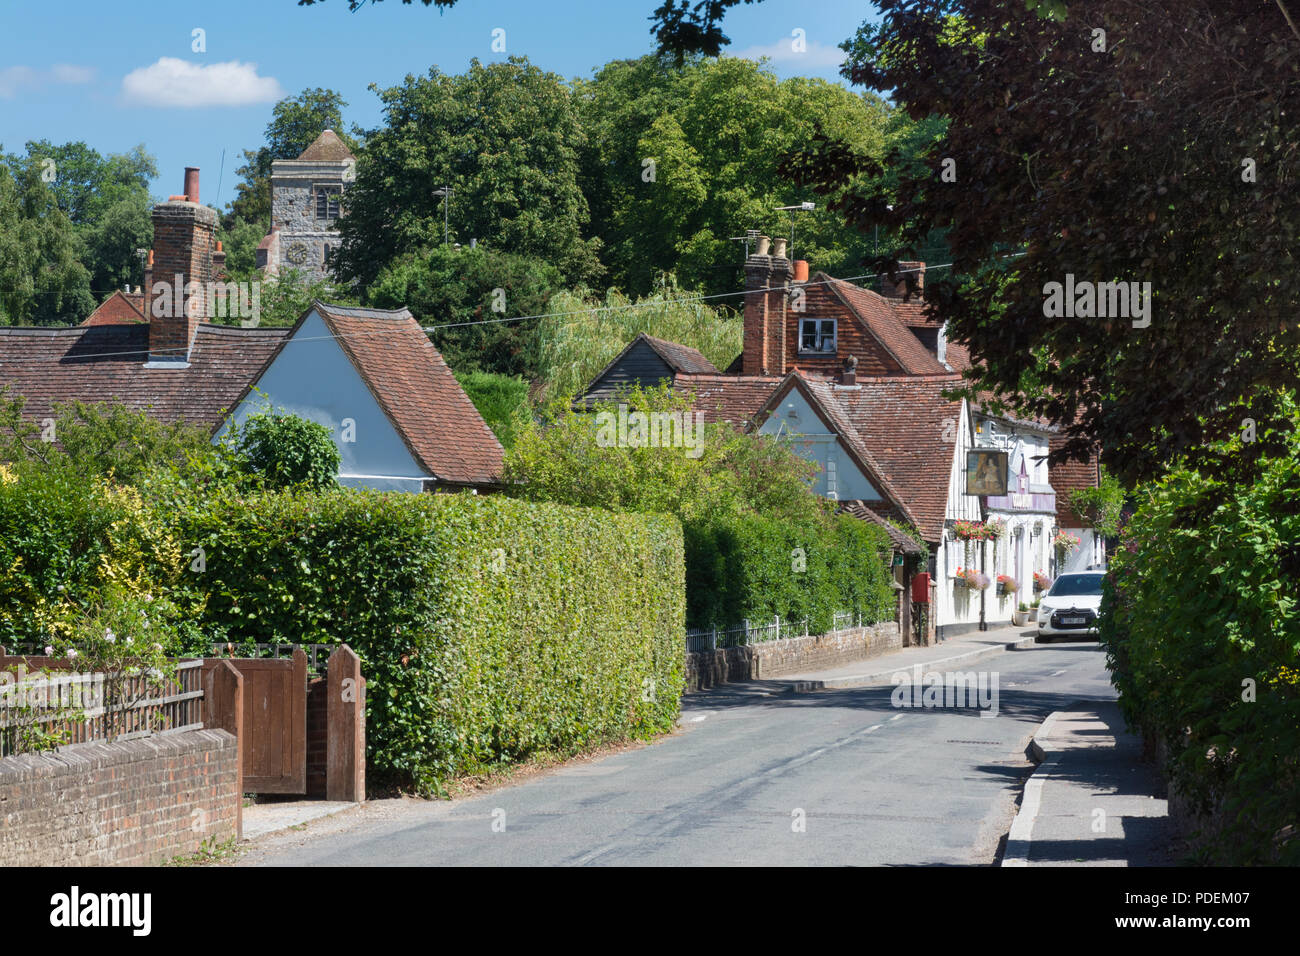 Maisons sur la rue dans le charmant village de Puttenham à Surrey, UK Banque D'Images